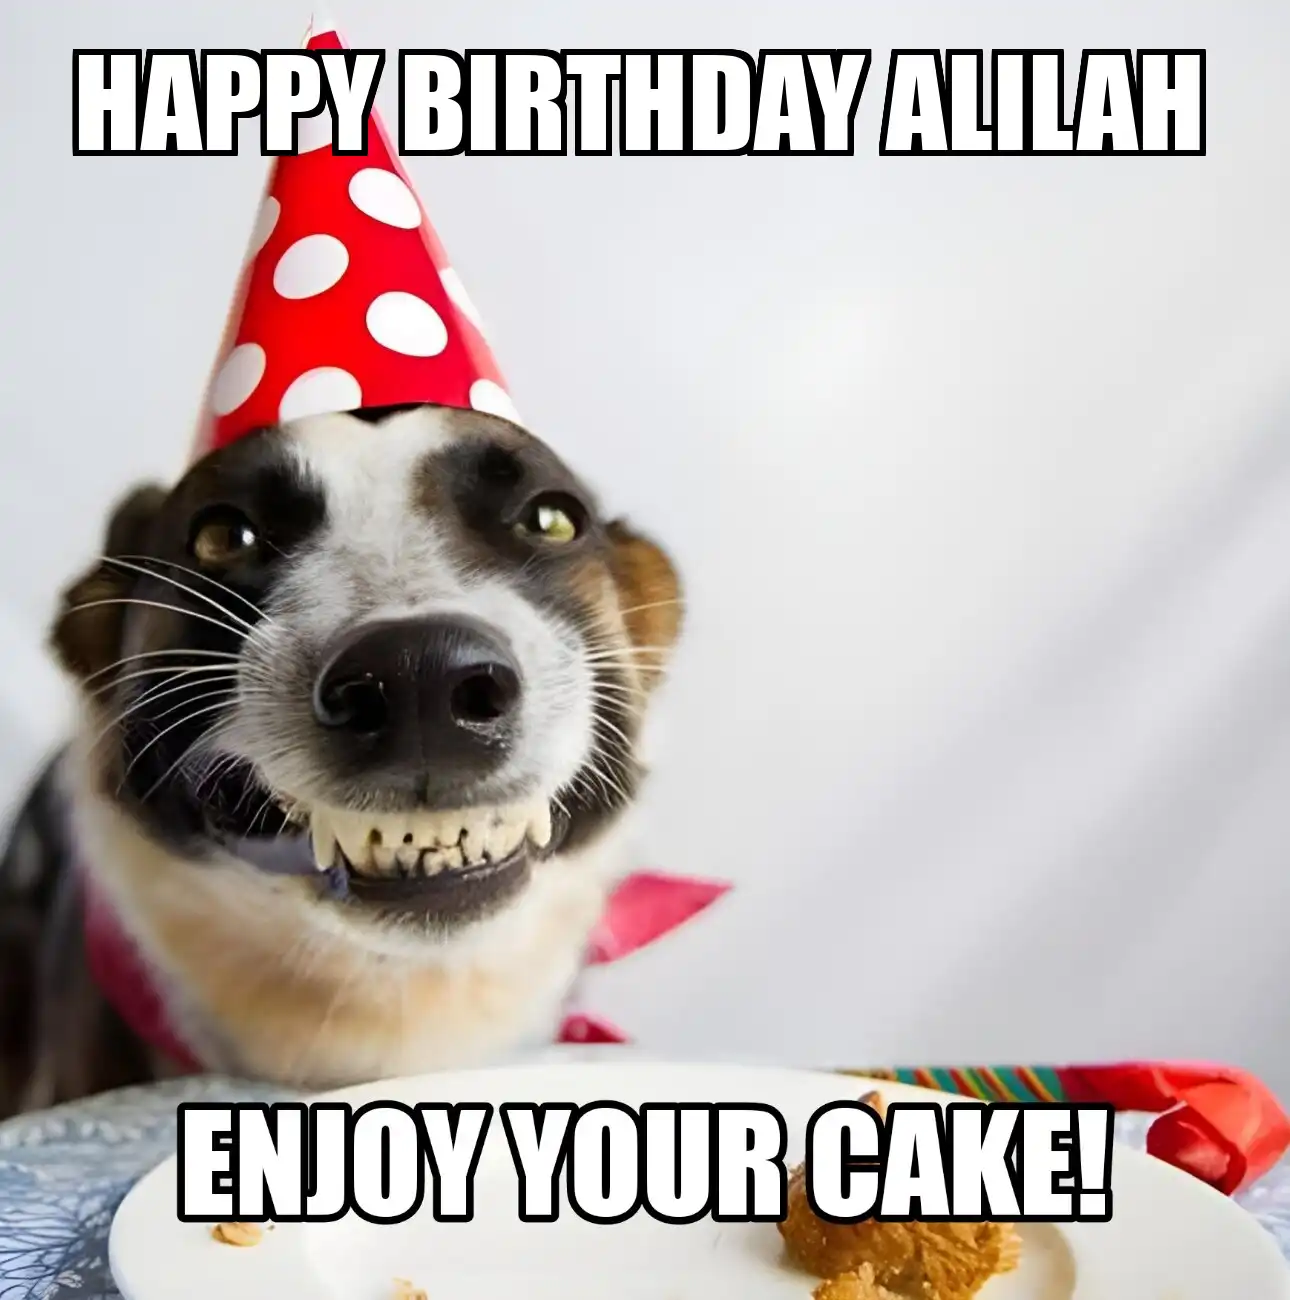 Happy Birthday Alilah Enjoy Your Cake Dog Meme